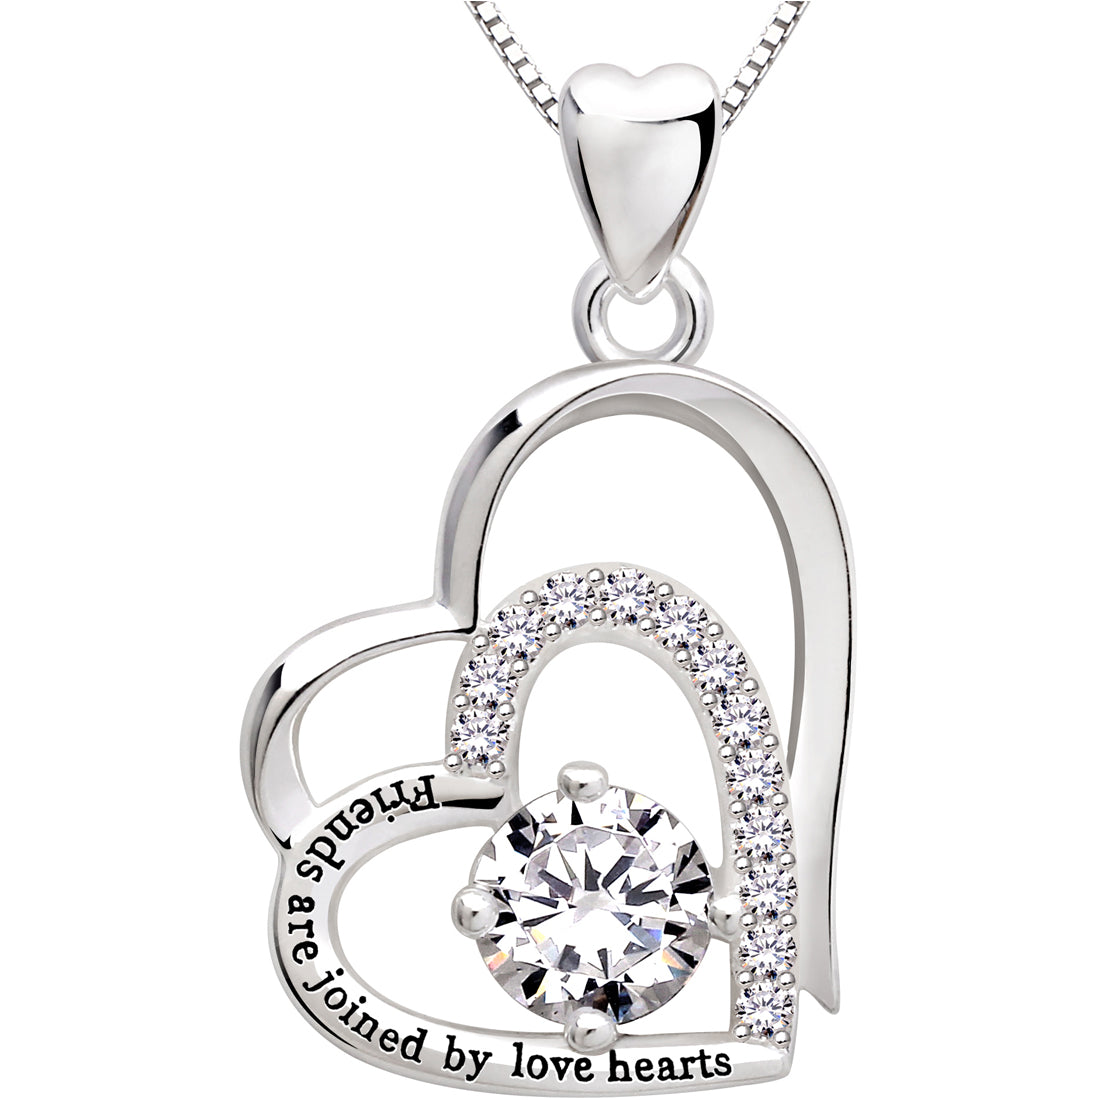 ALOV Jewelry Halskette mit Anhänger aus Sterlingsilber mit doppeltem Liebesherz und kubischem Zirkonia „Friends are connected by love hearts“.